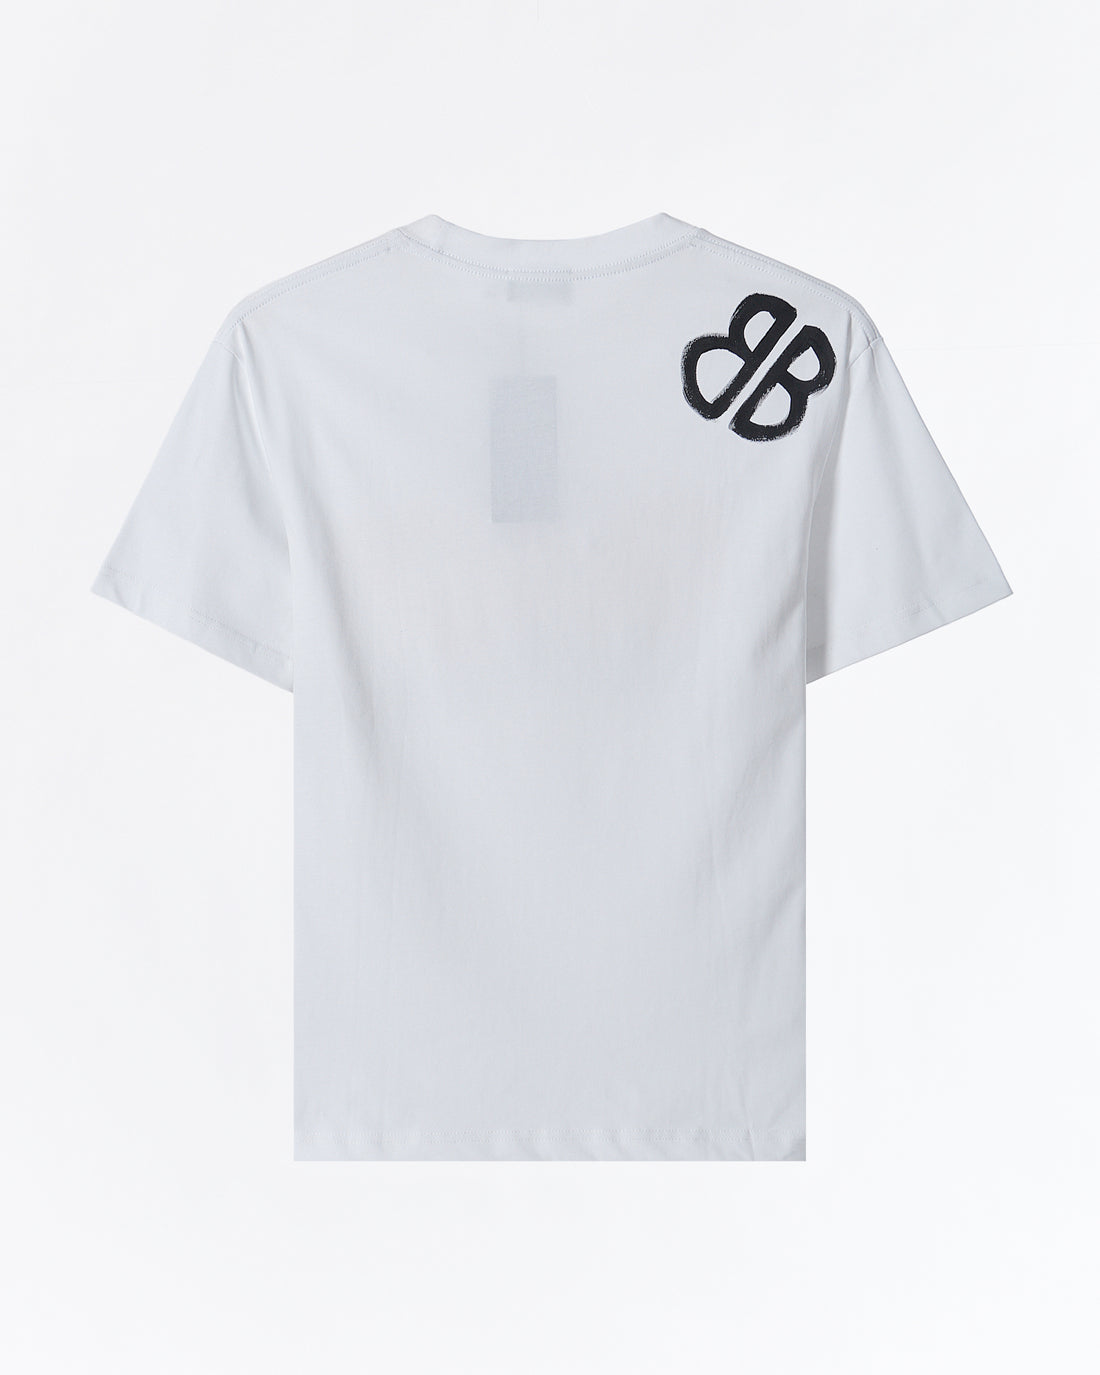 GG X BB Printed Men T-Shirt 55.90